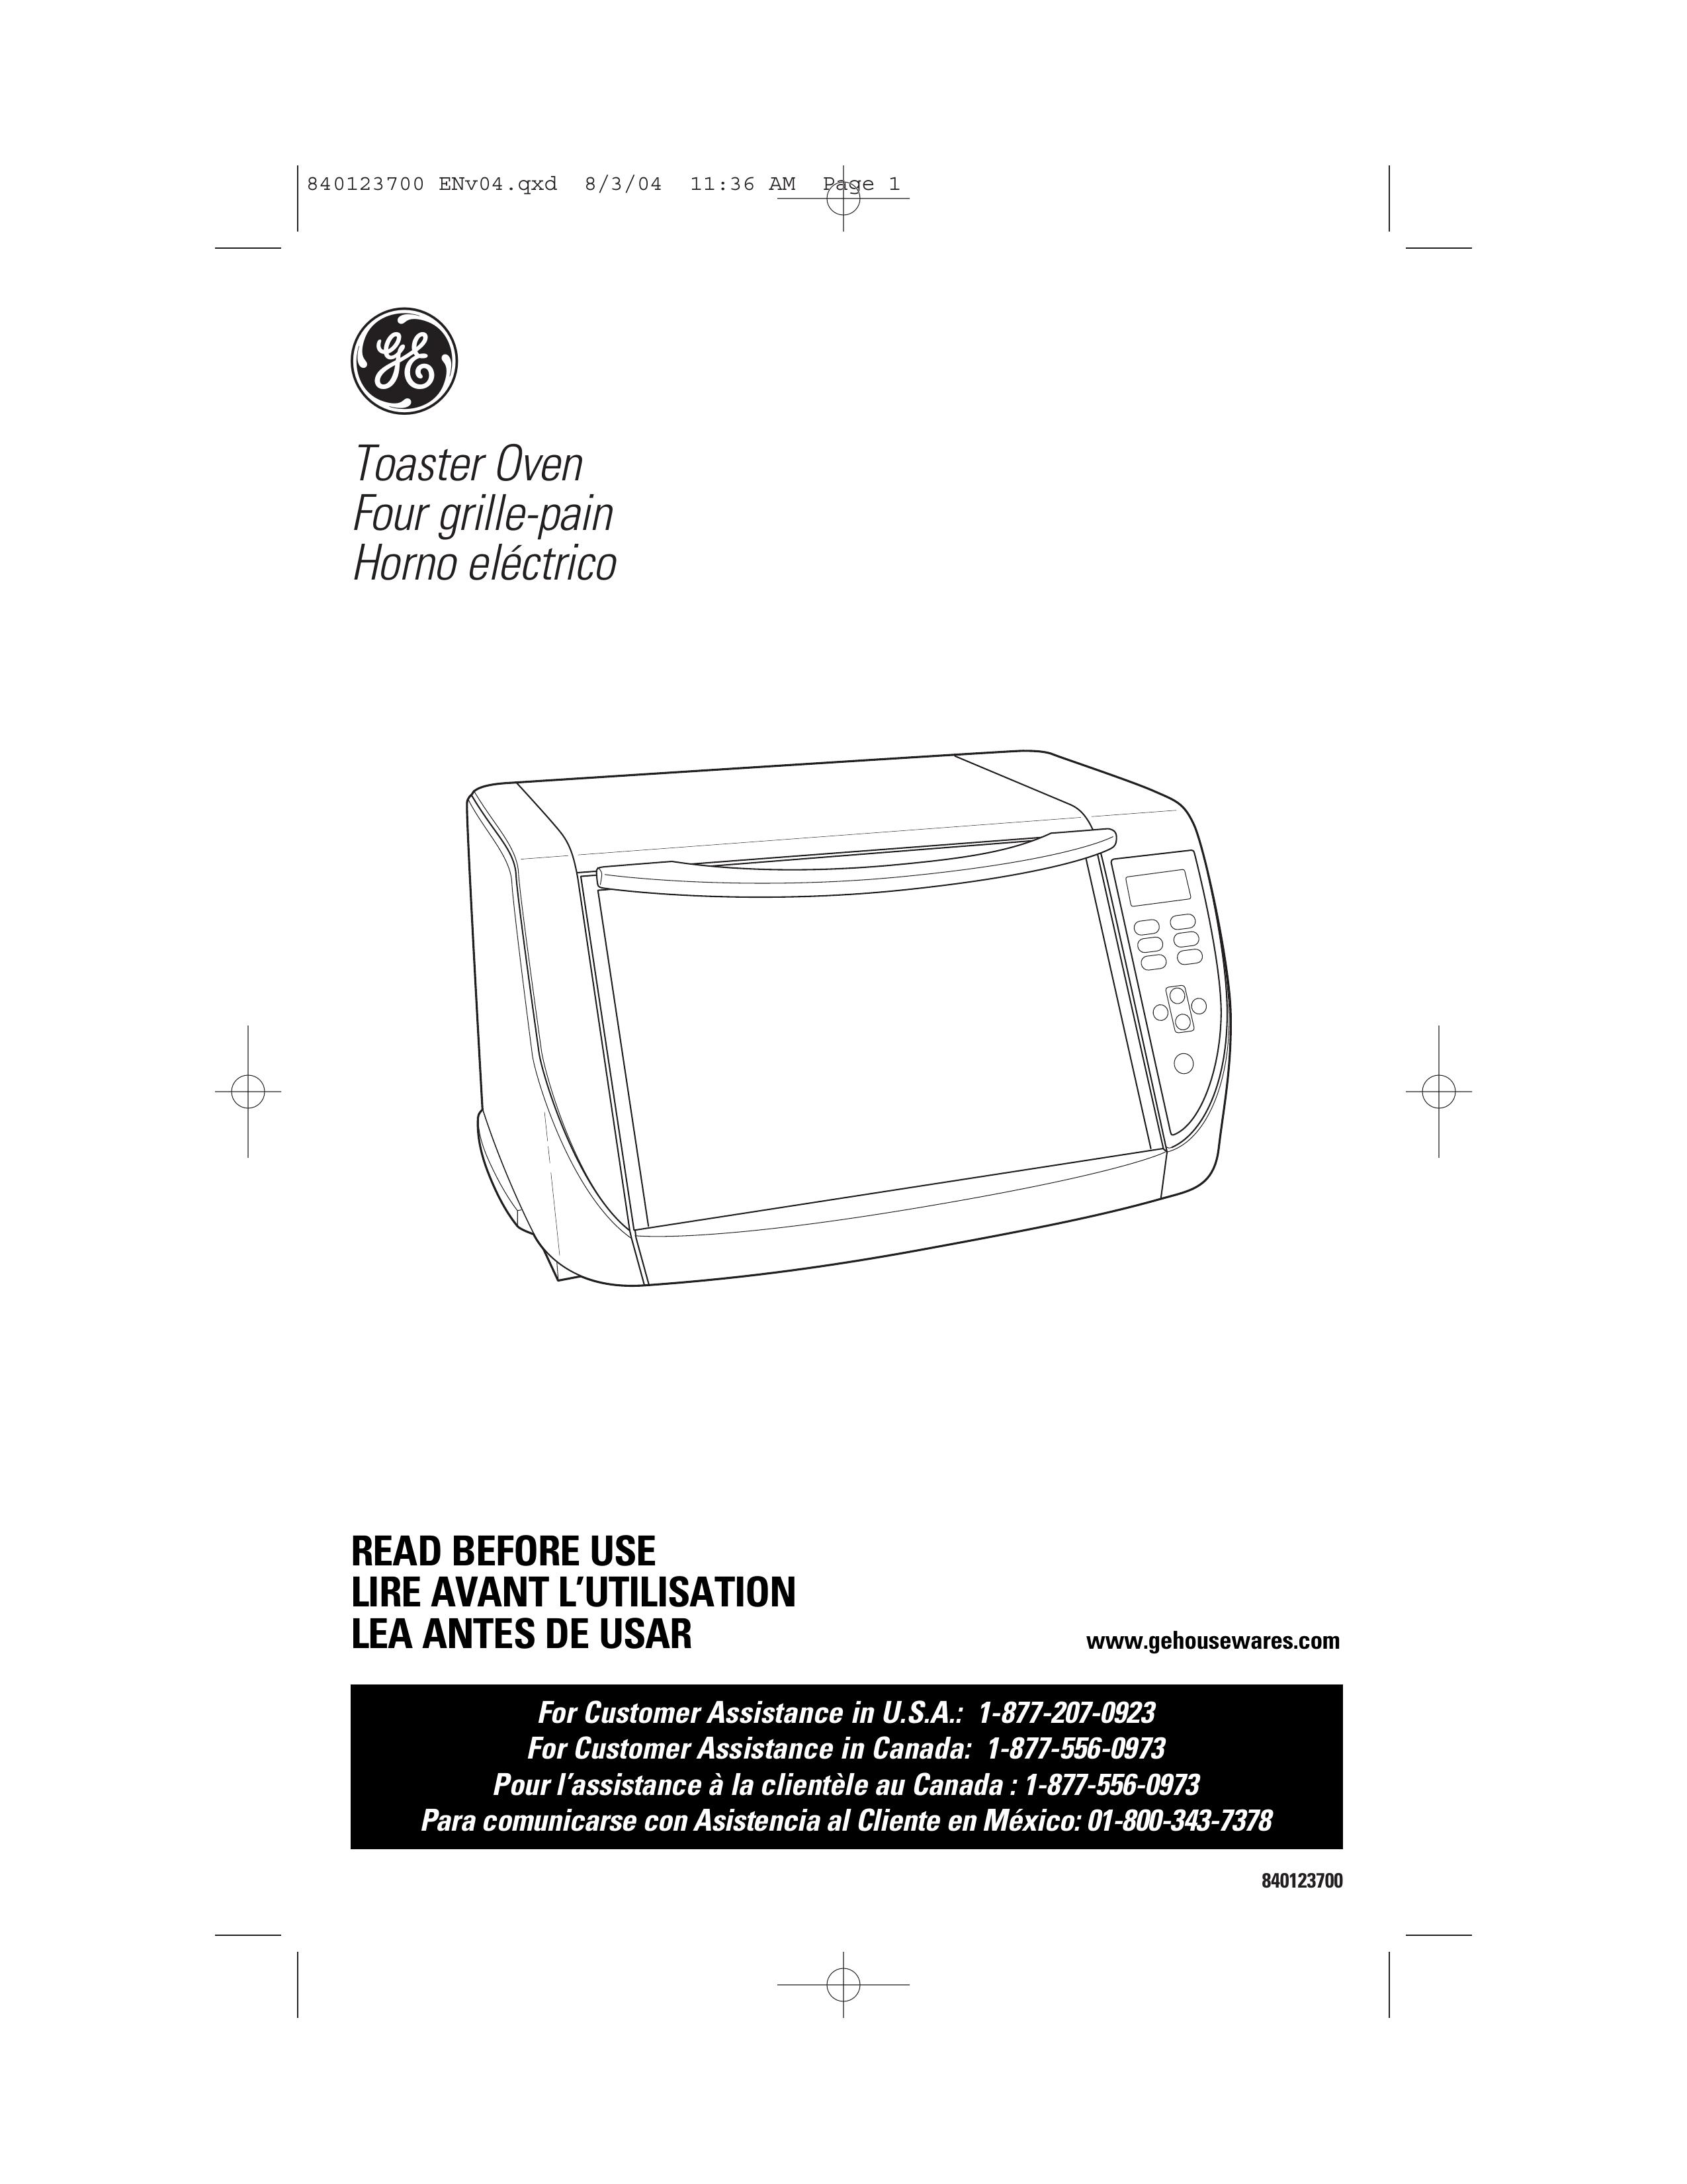 GE 840123700 Toaster User Manual